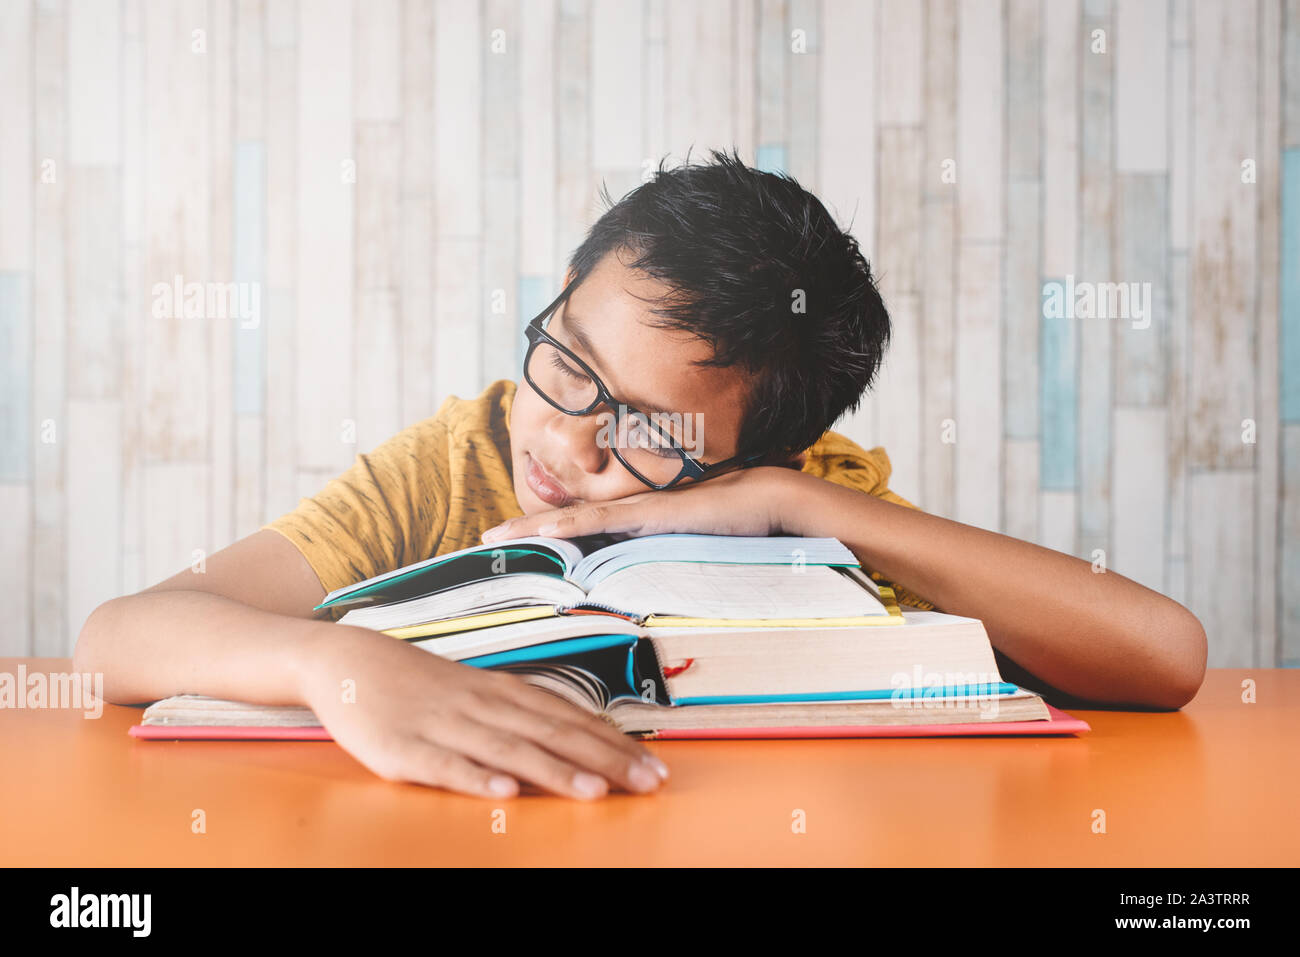 Joven estudiante varón asiático dormirse sobre una pila de libros mientras estudian. El concepto de educación, el cansancio y la pereza Foto de stock